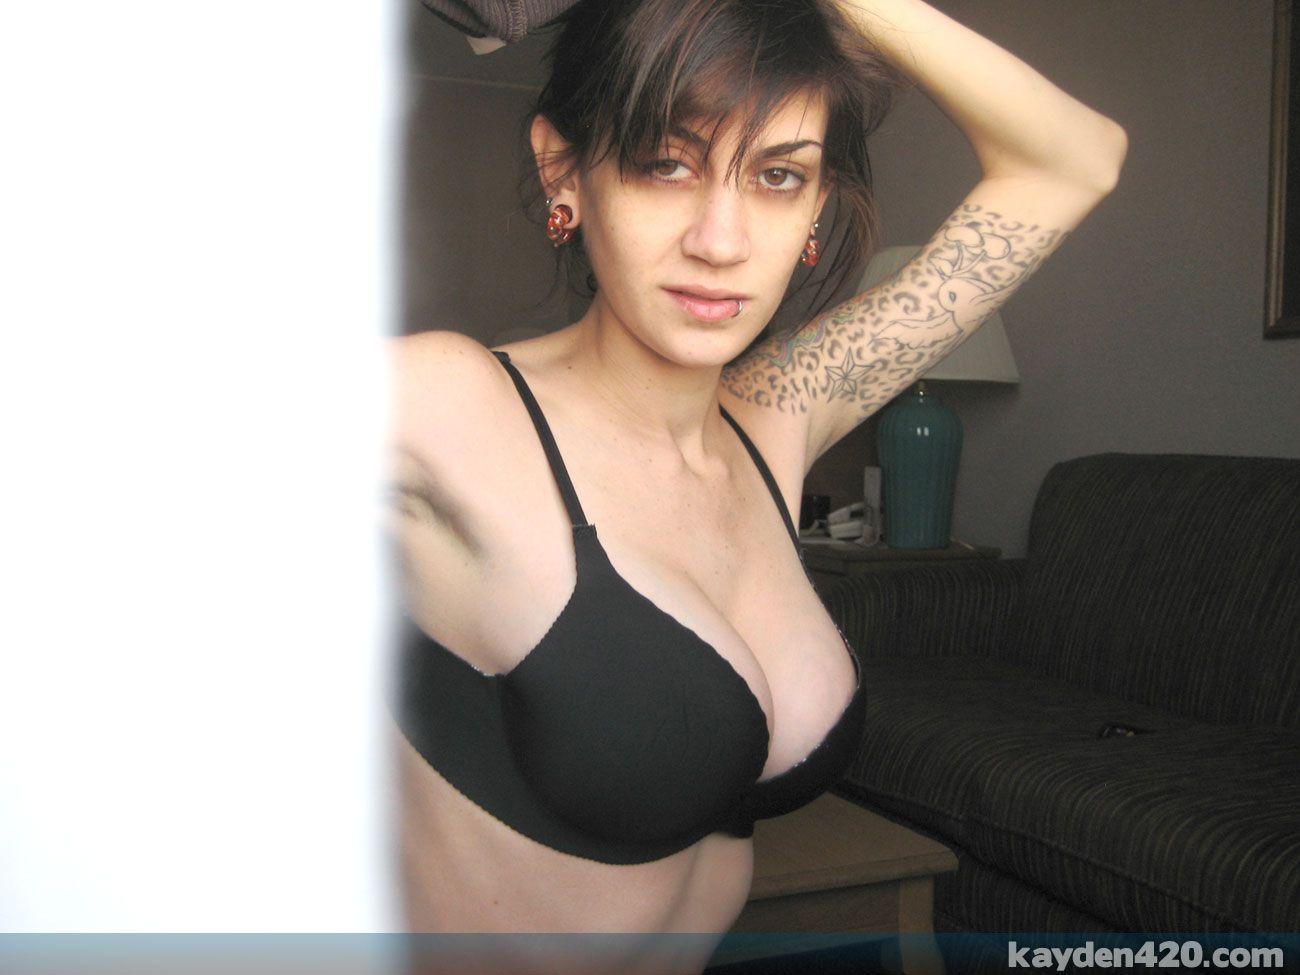 Immagini di Kayden 420 che mostra il suo caldo corpo nudo
 #58165433